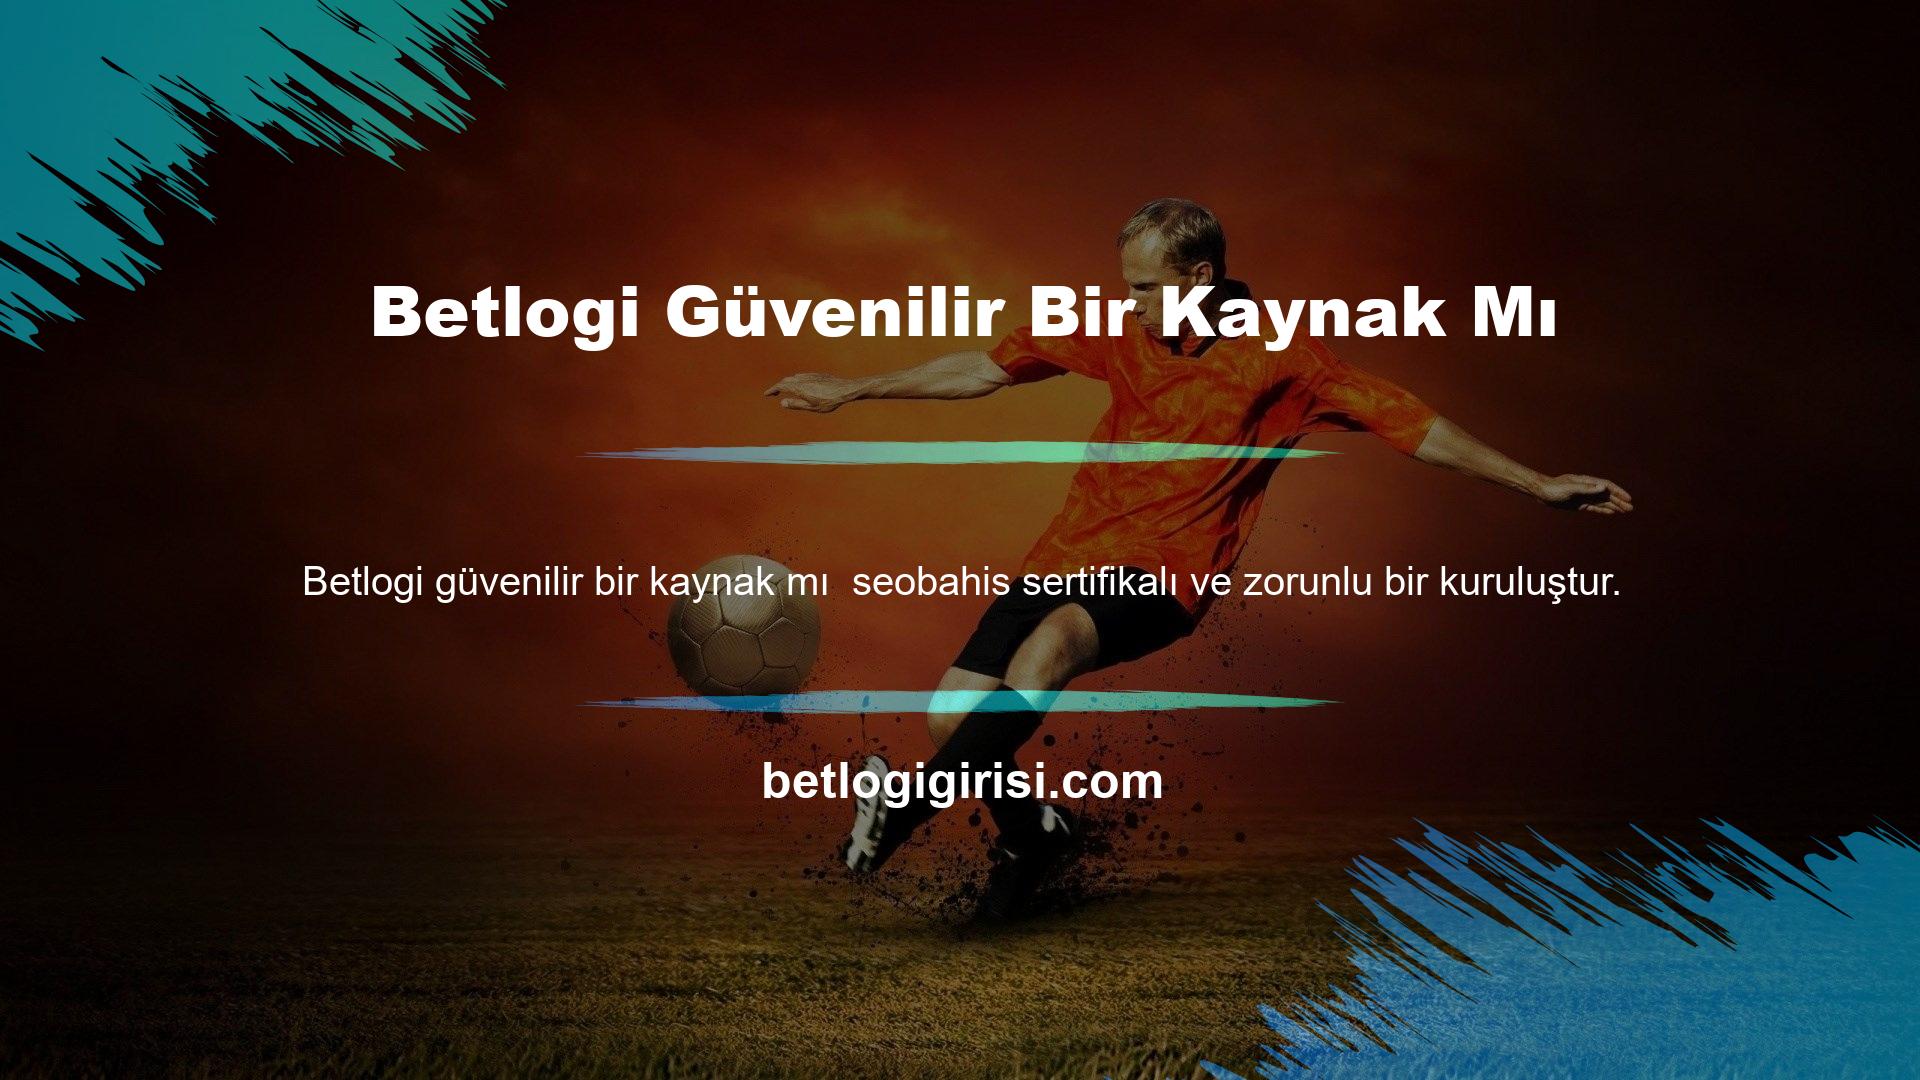 Betlogi, Türkiye’de yasa dışı casino için güvenli bir yerdir